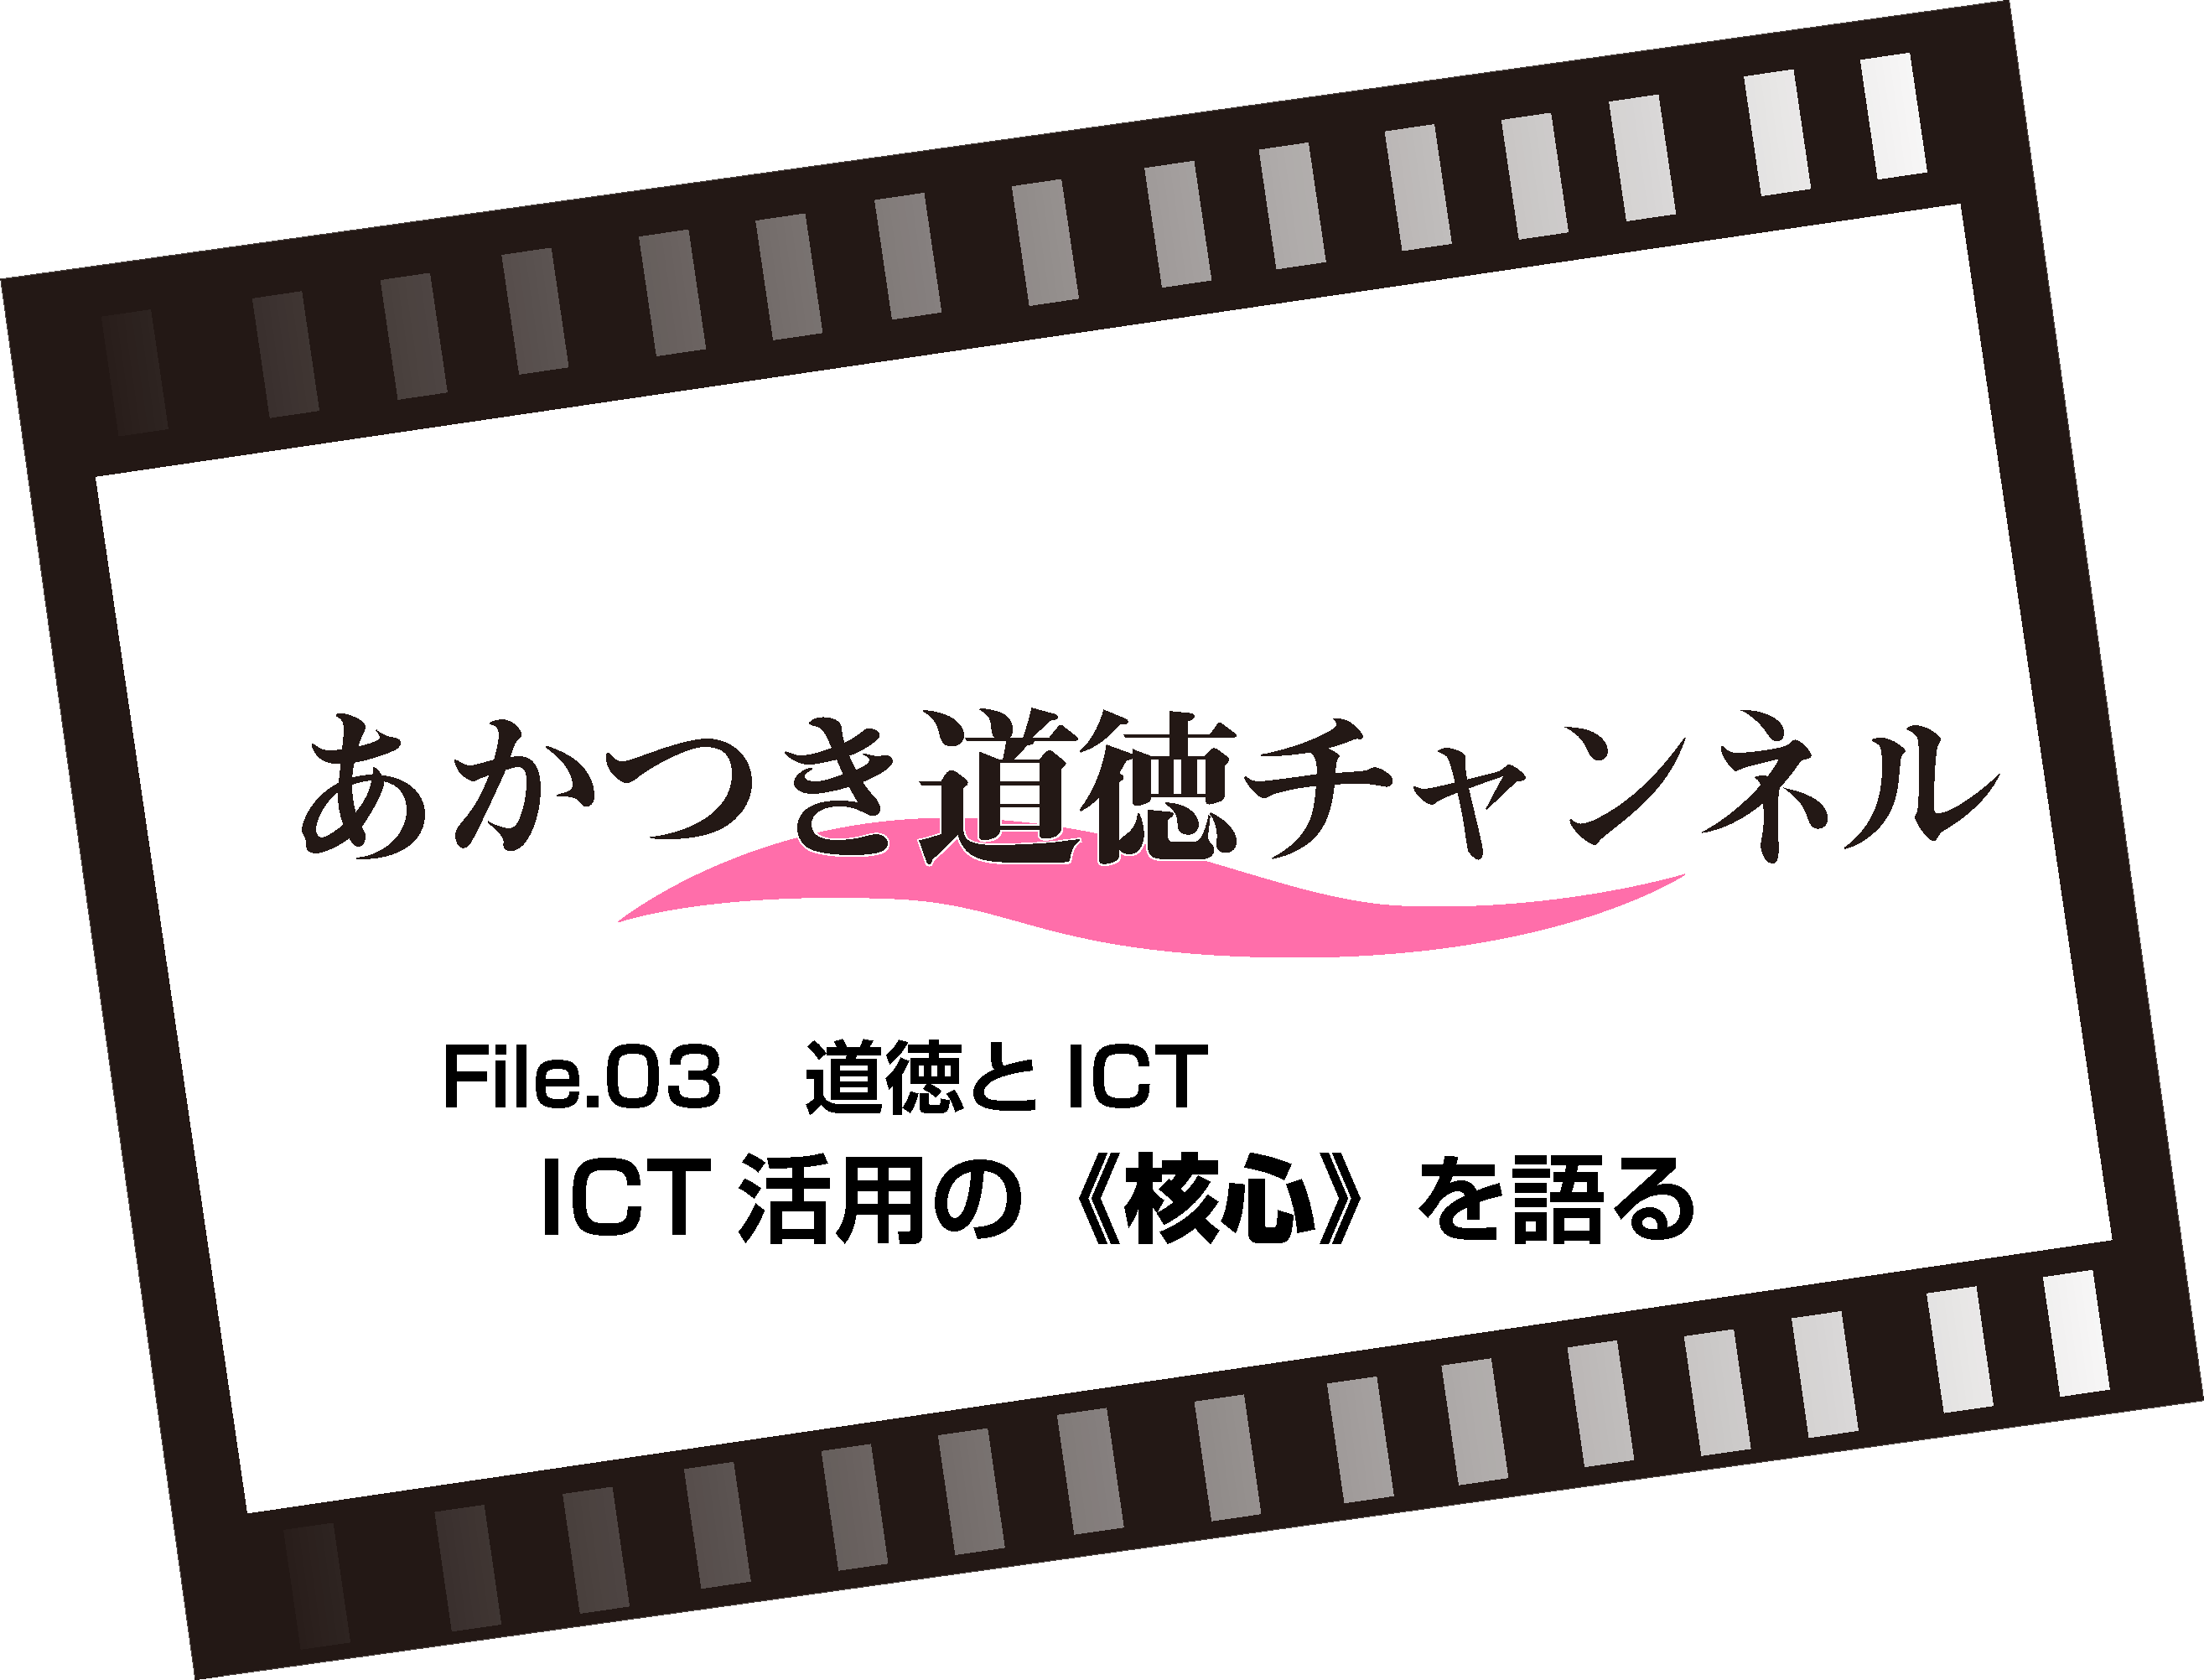 File.03 ICT活用の核心を語る（7:54）